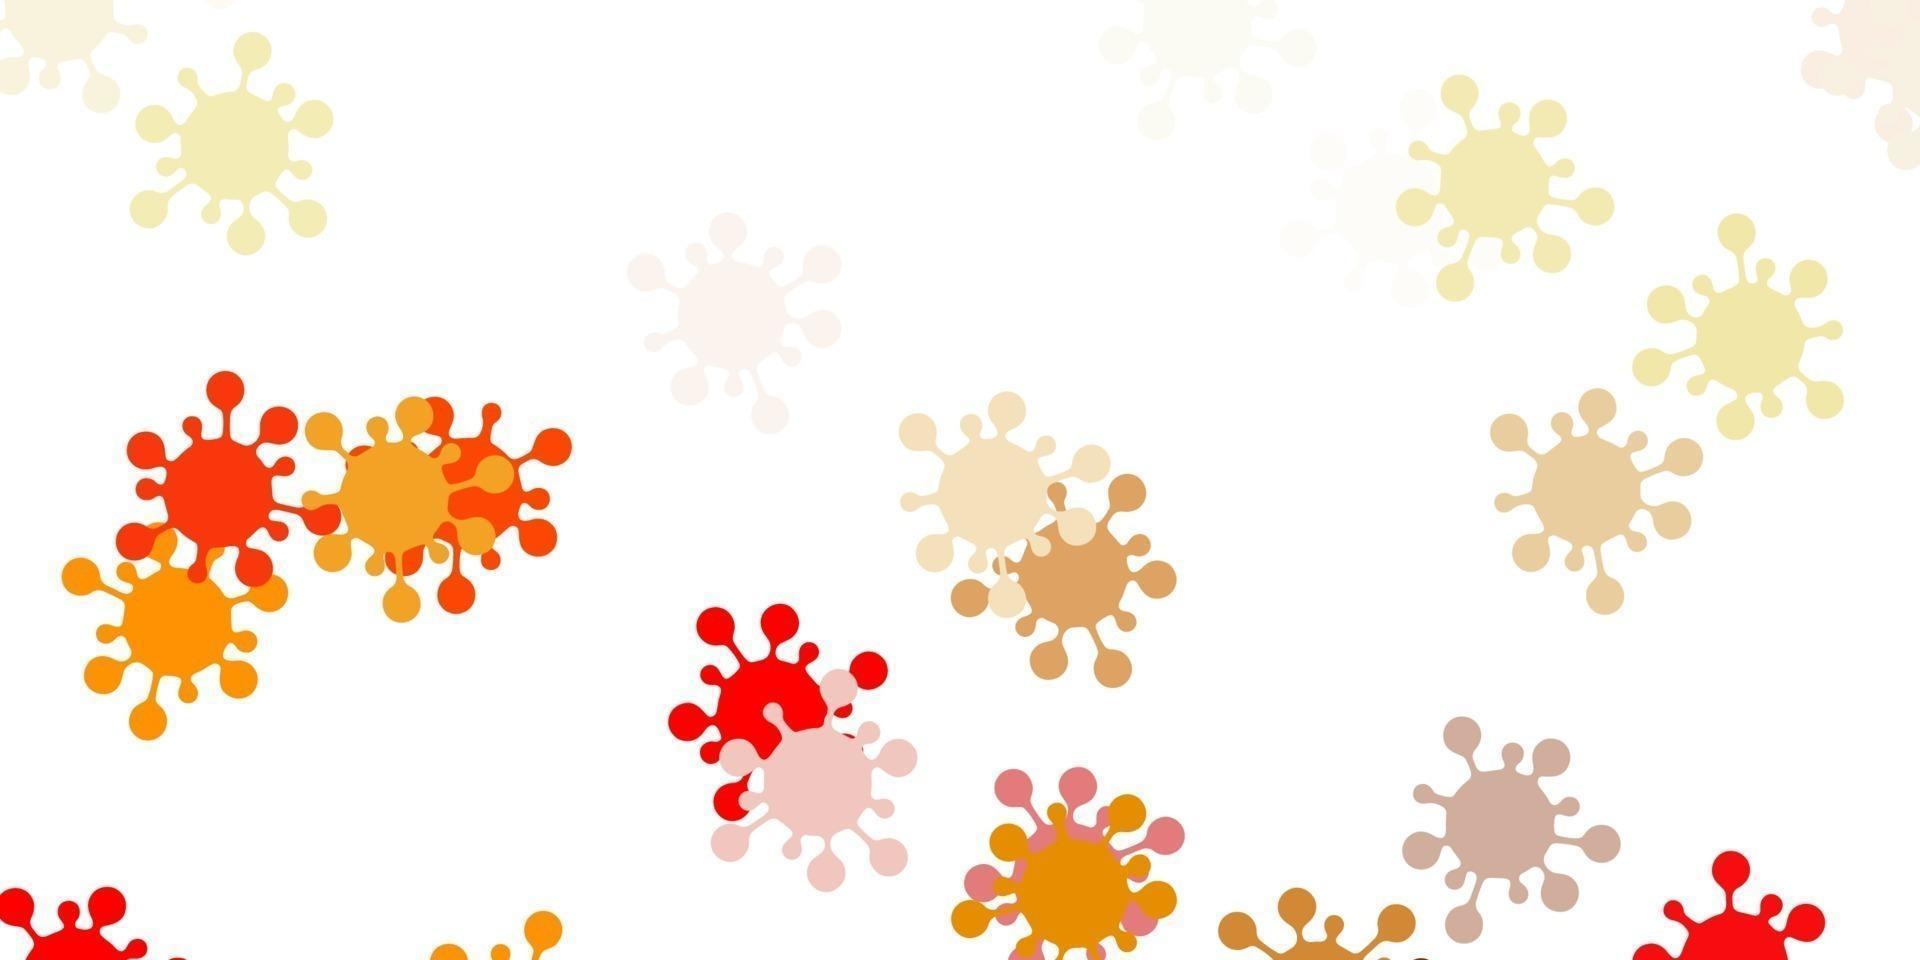 modèle vectoriel rouge et jaune clair avec des signes de grippe.